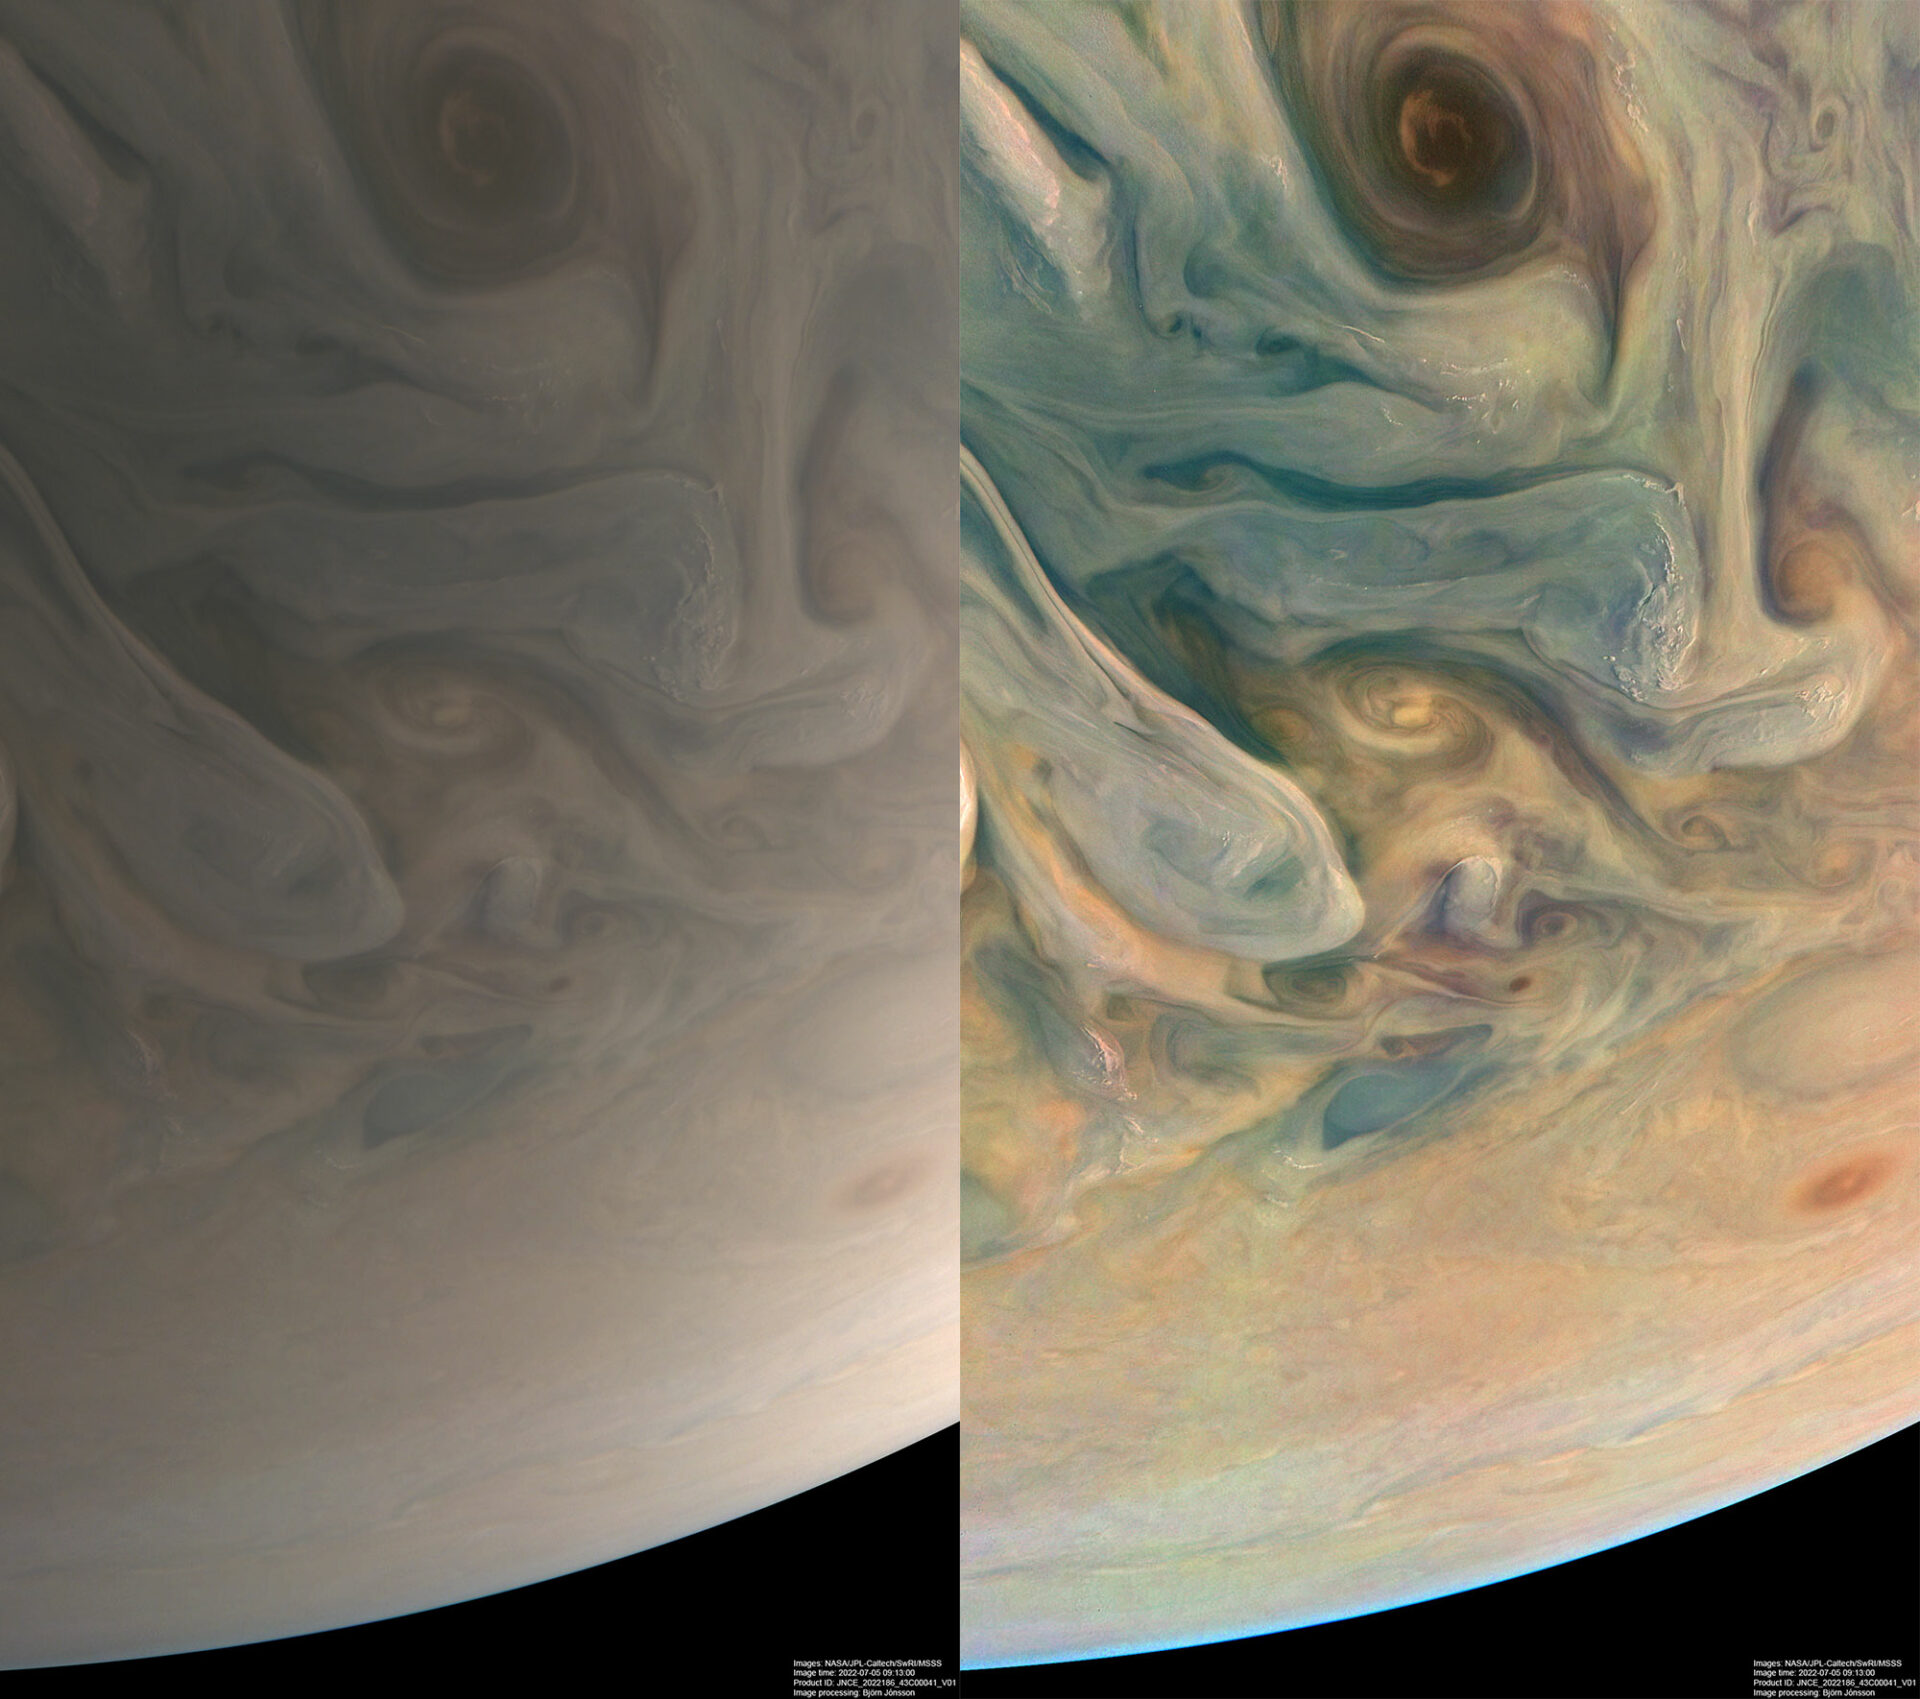 NASA Juno наблюдал сложные цвета и структуру облаков Юпитера во время своего 43-го облета планеты 5 июля 2022 года